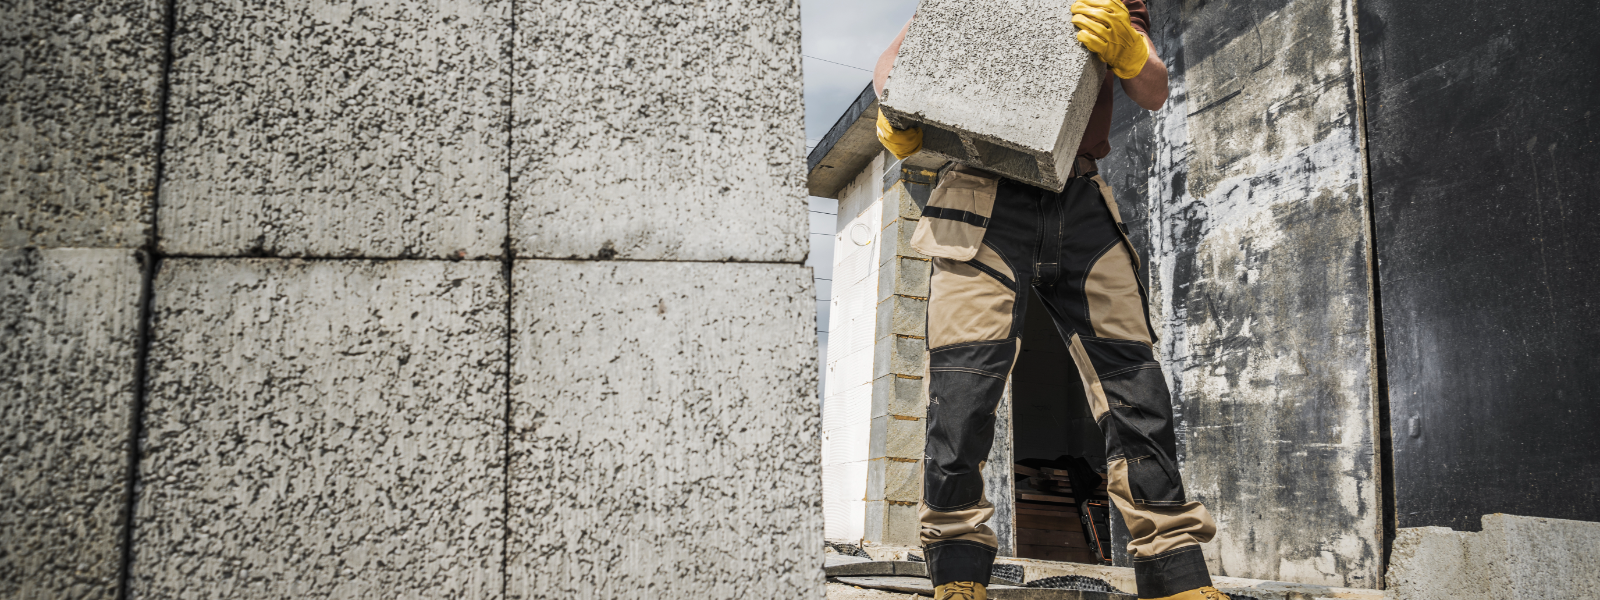 ULTIMATES OÜ - Tegeleme laiaulatuslike ehitusteenuste pakkumisega alates vundamenditöödest kuni hoone viimistluseni.